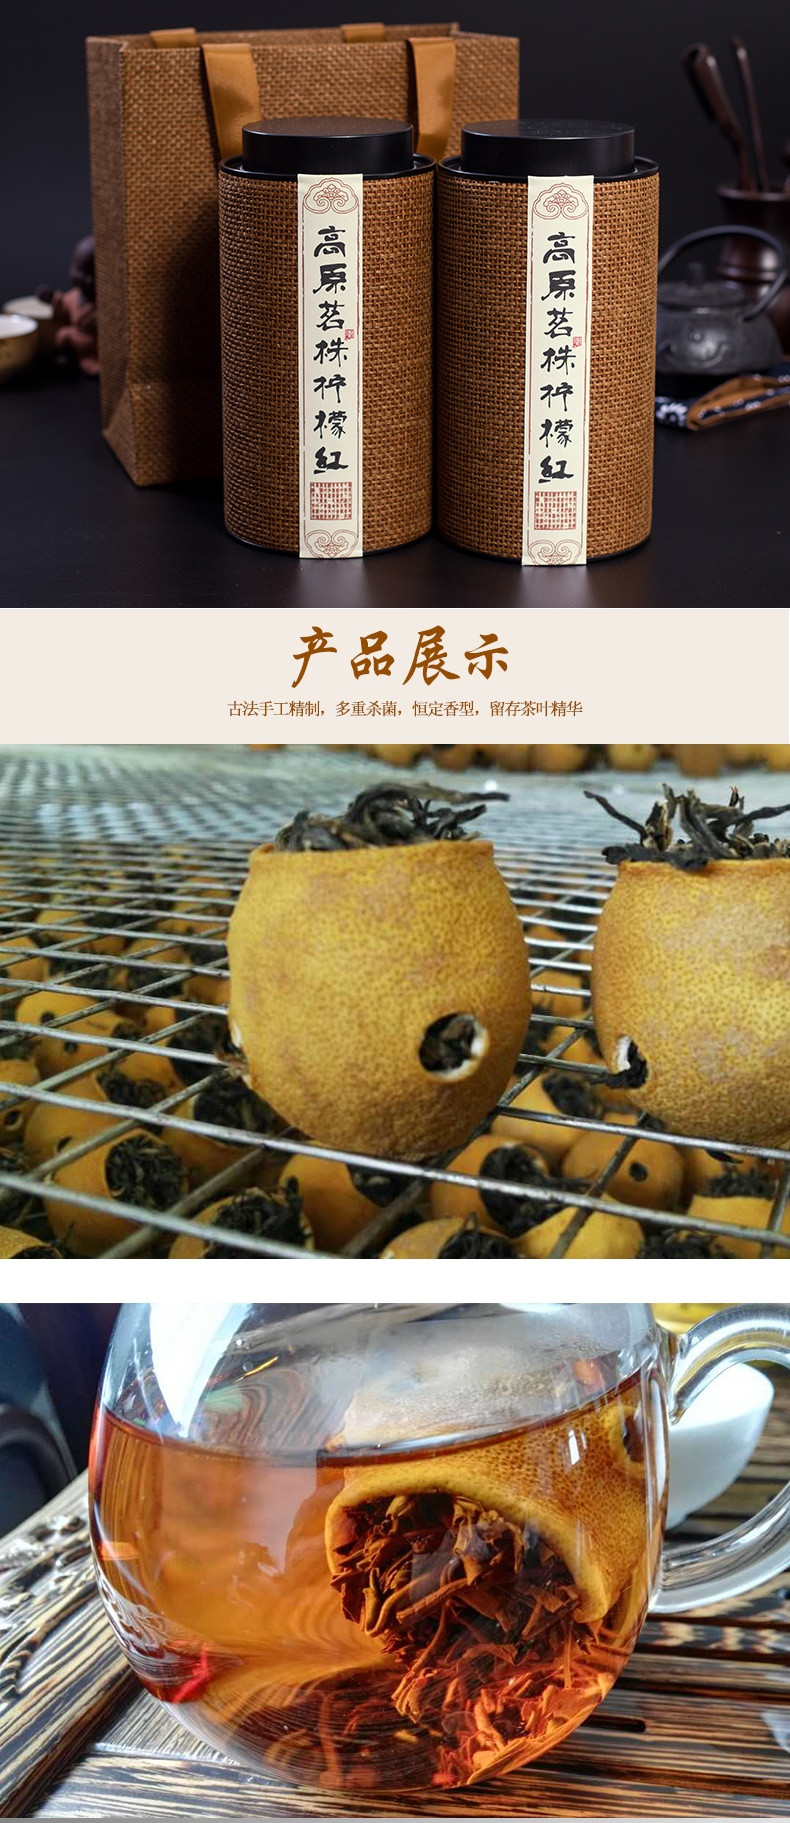 高原茗株 柠檬红500g一套共2罐